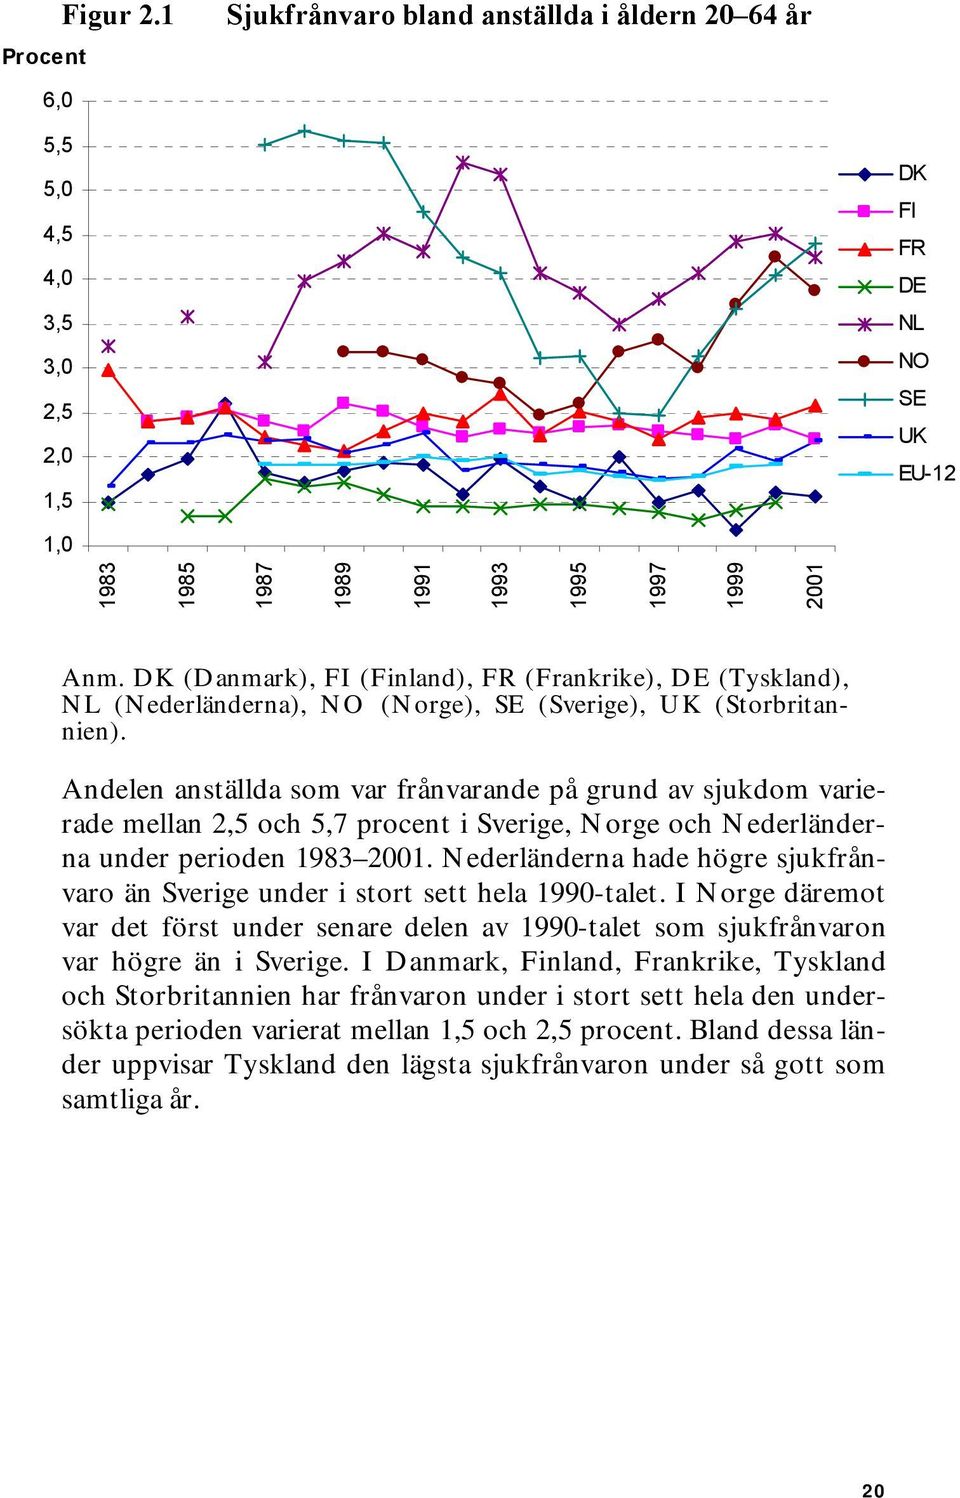 under perioden 1983-2001. Nederländerna hade högre sjukfrånvaro än Sverige under i stort sett hela 1990-talet. I Norge däremot kom sjukfrånvaron i nivå med den svenska först vid mitten av 1990-talet.